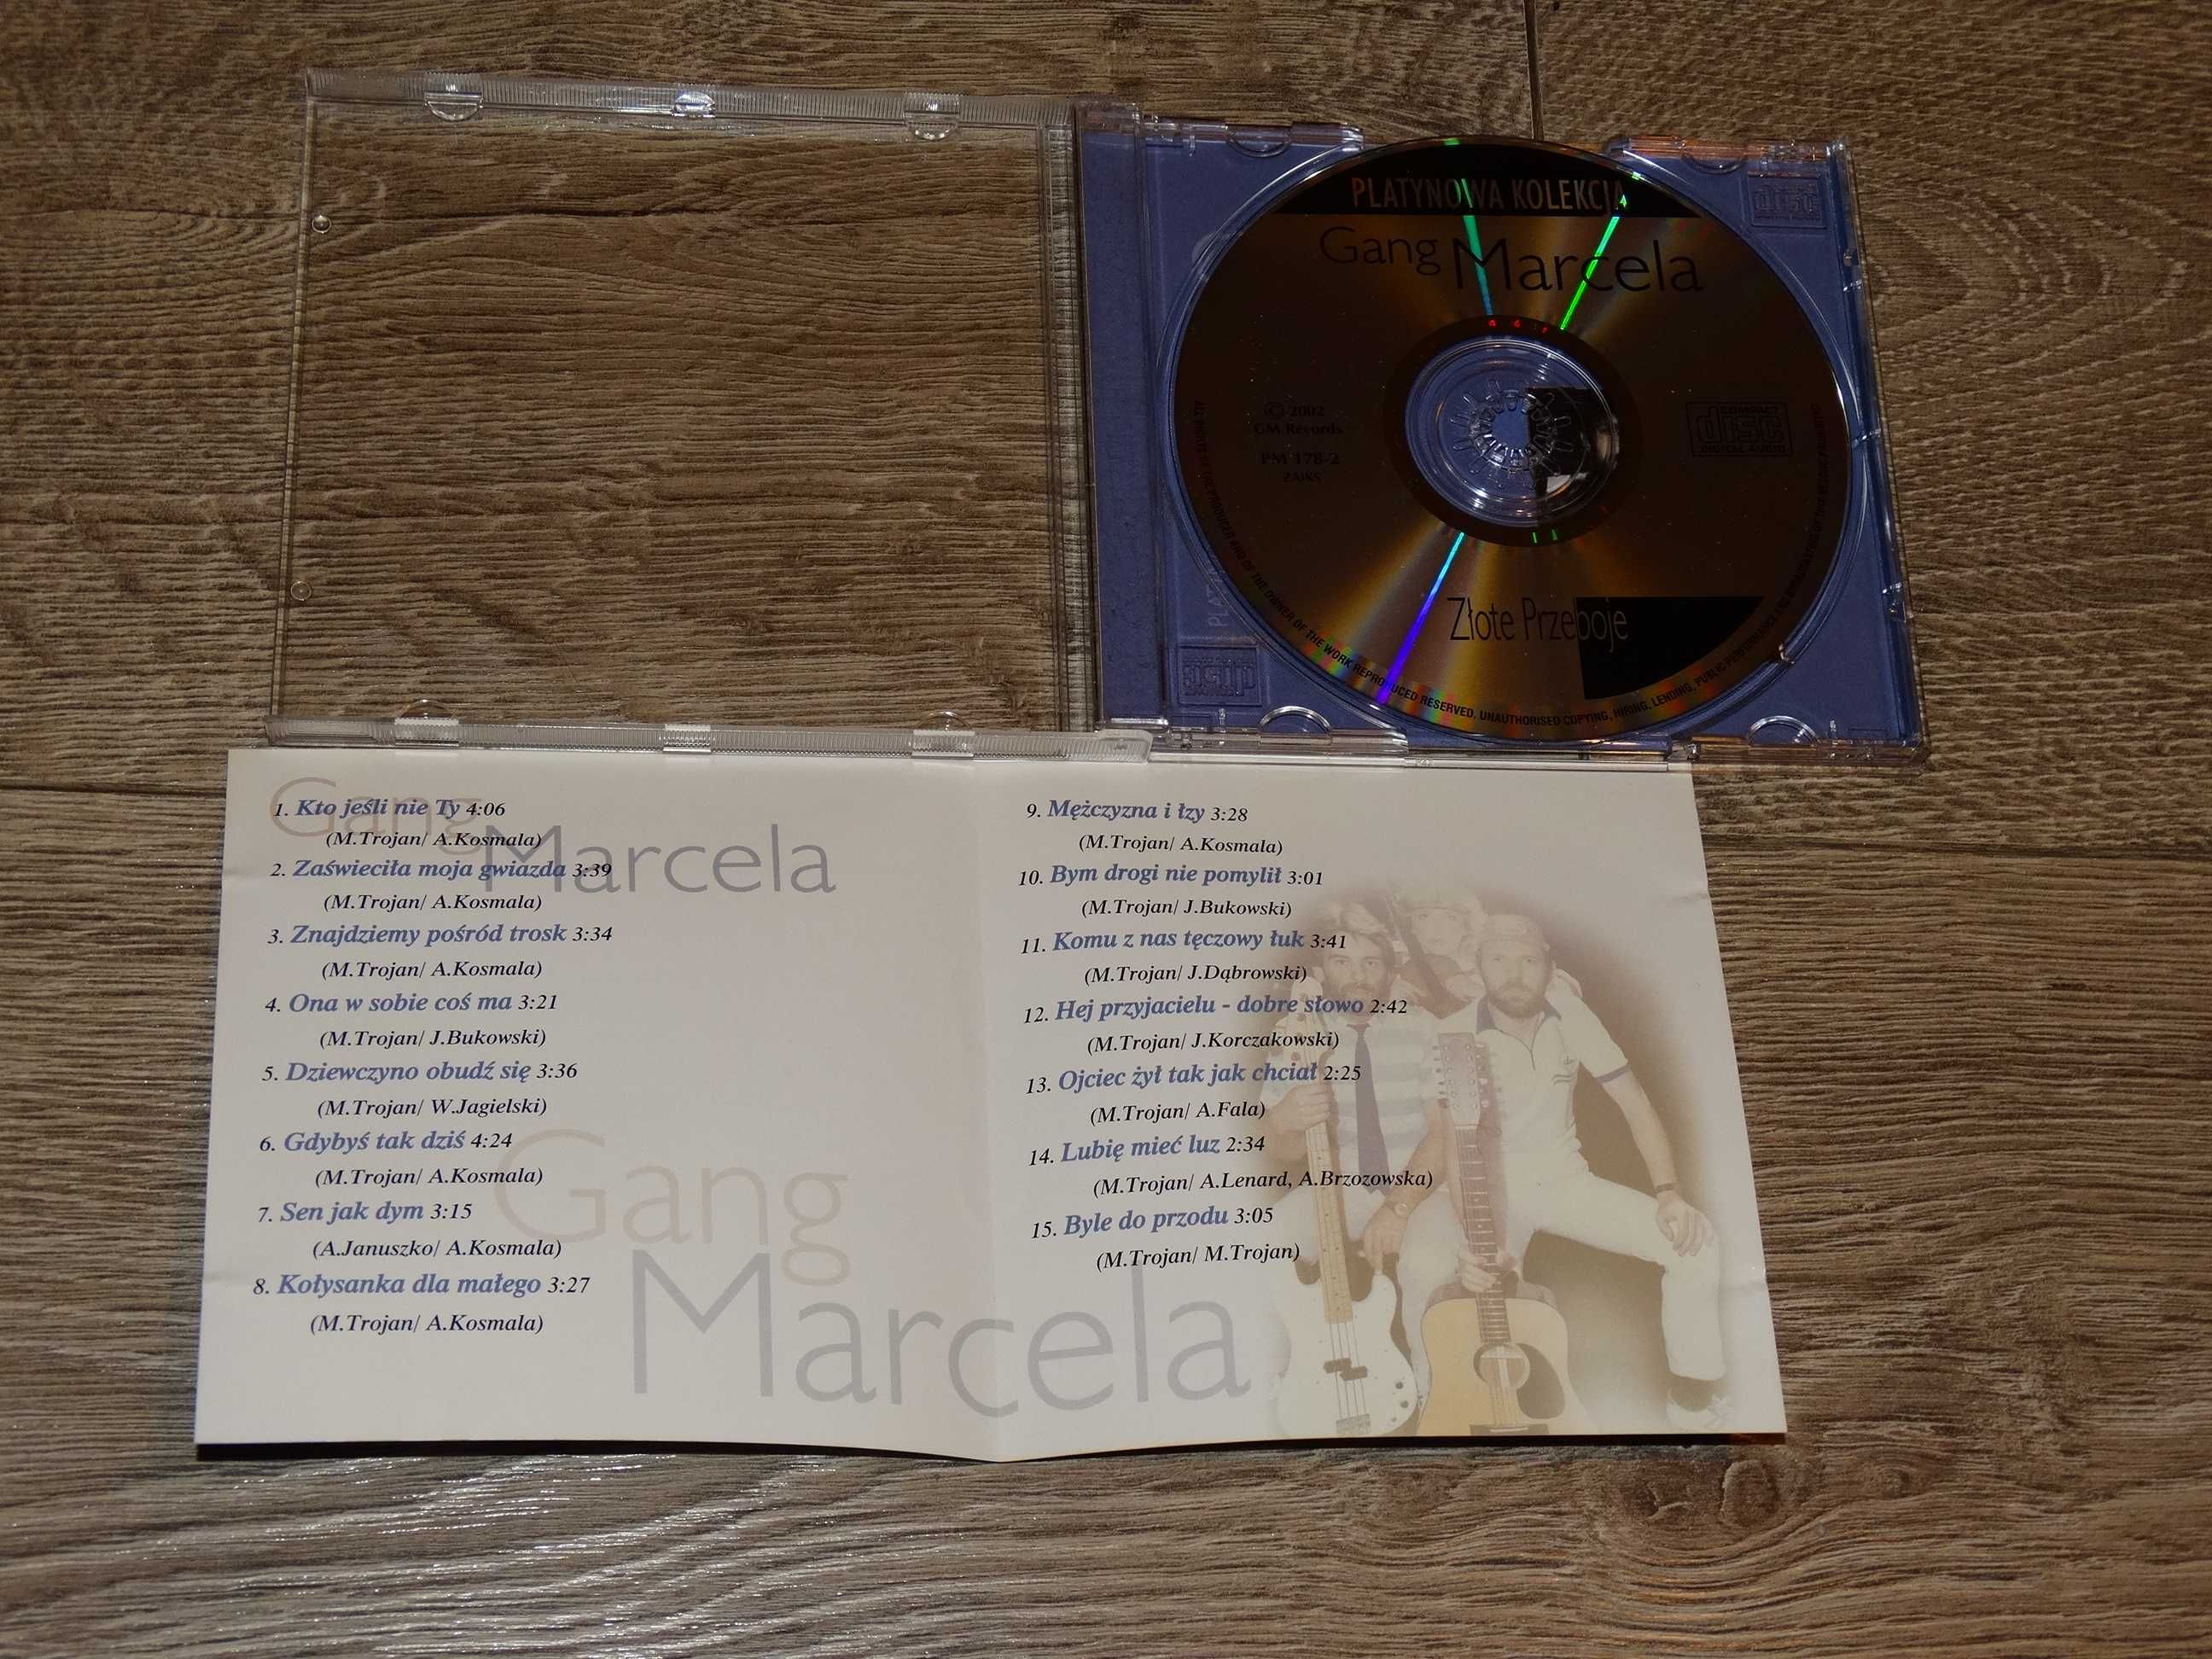 Gang Marcela - Złote Przeboje Platynowa Kolekcja CD